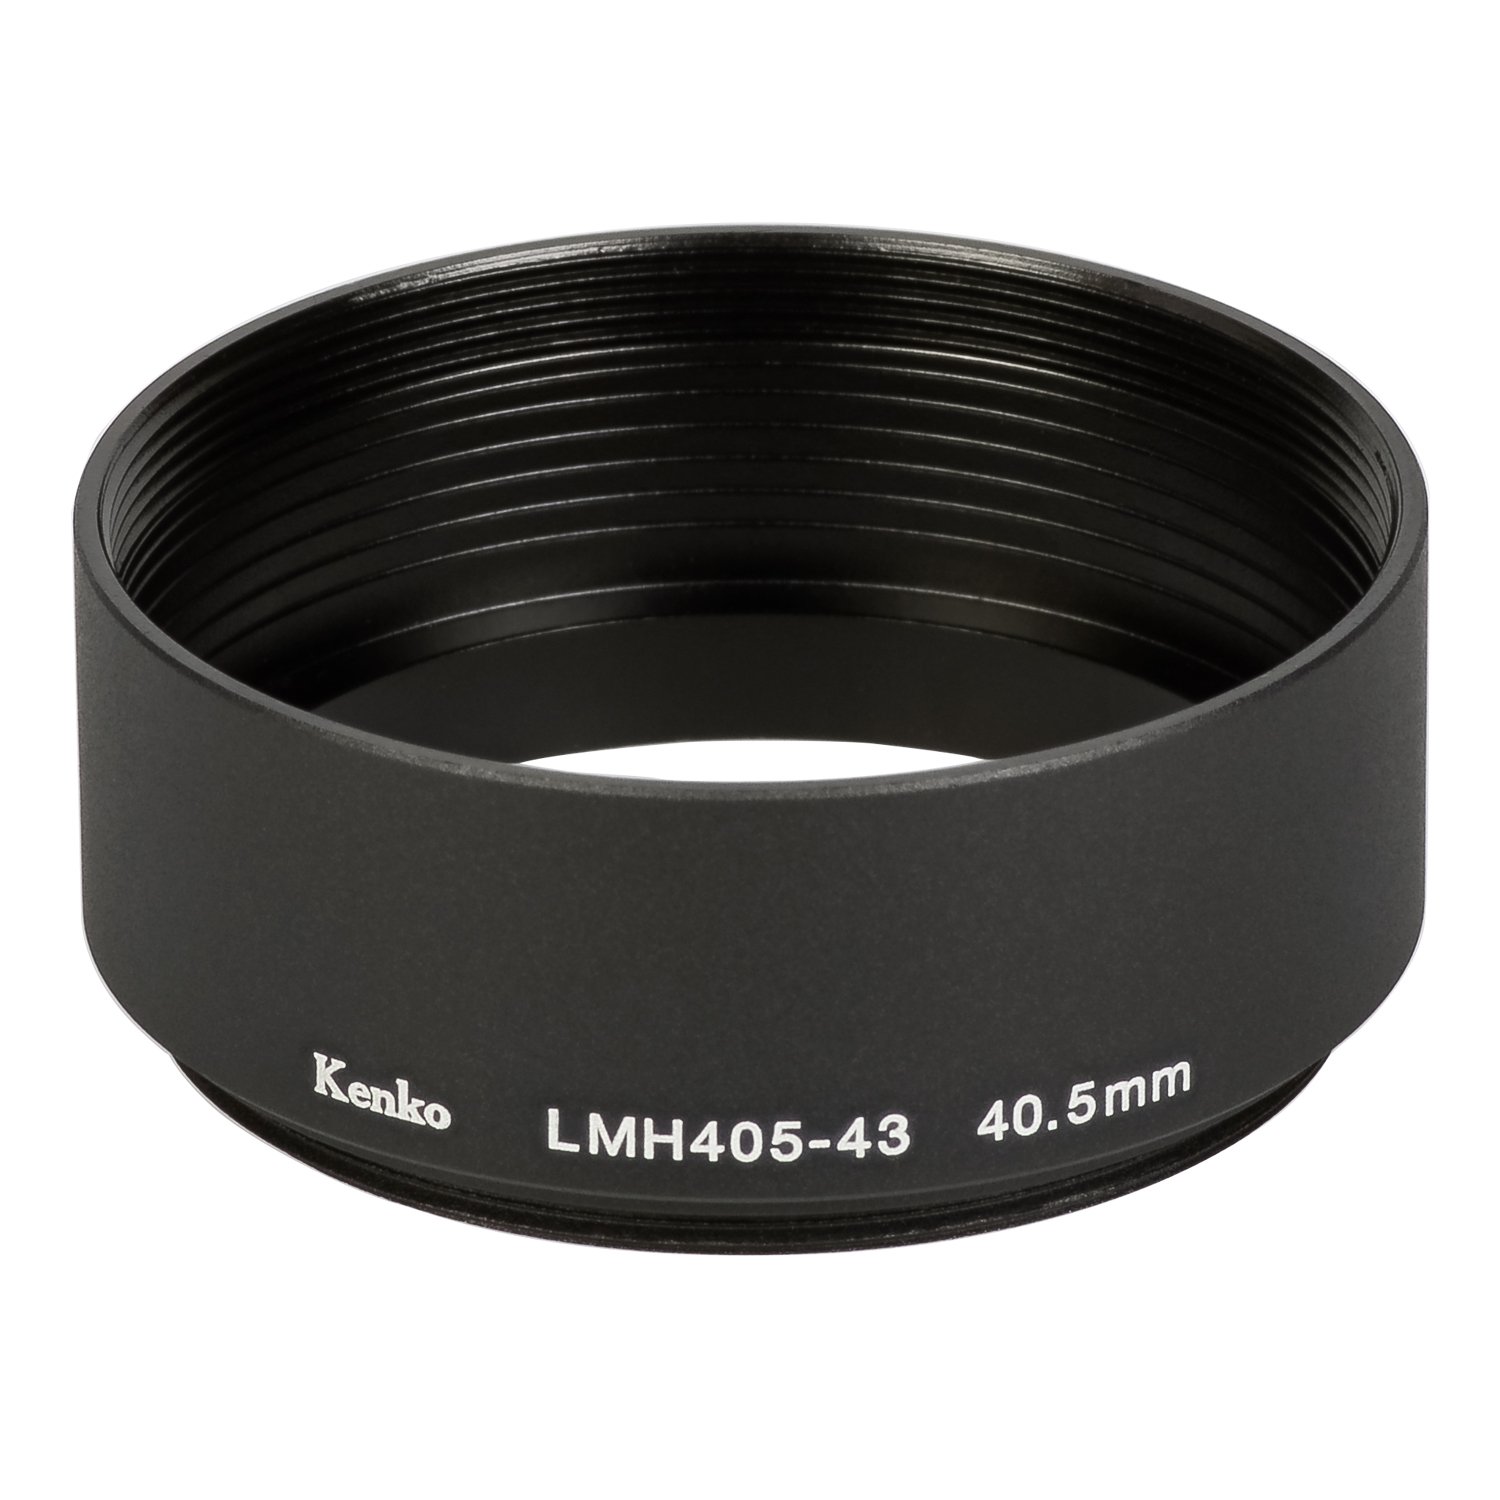 Kenko レンズフード レンズメタルフード LMH405-43 BK 40.5mm アルミ製 連結可能 791998